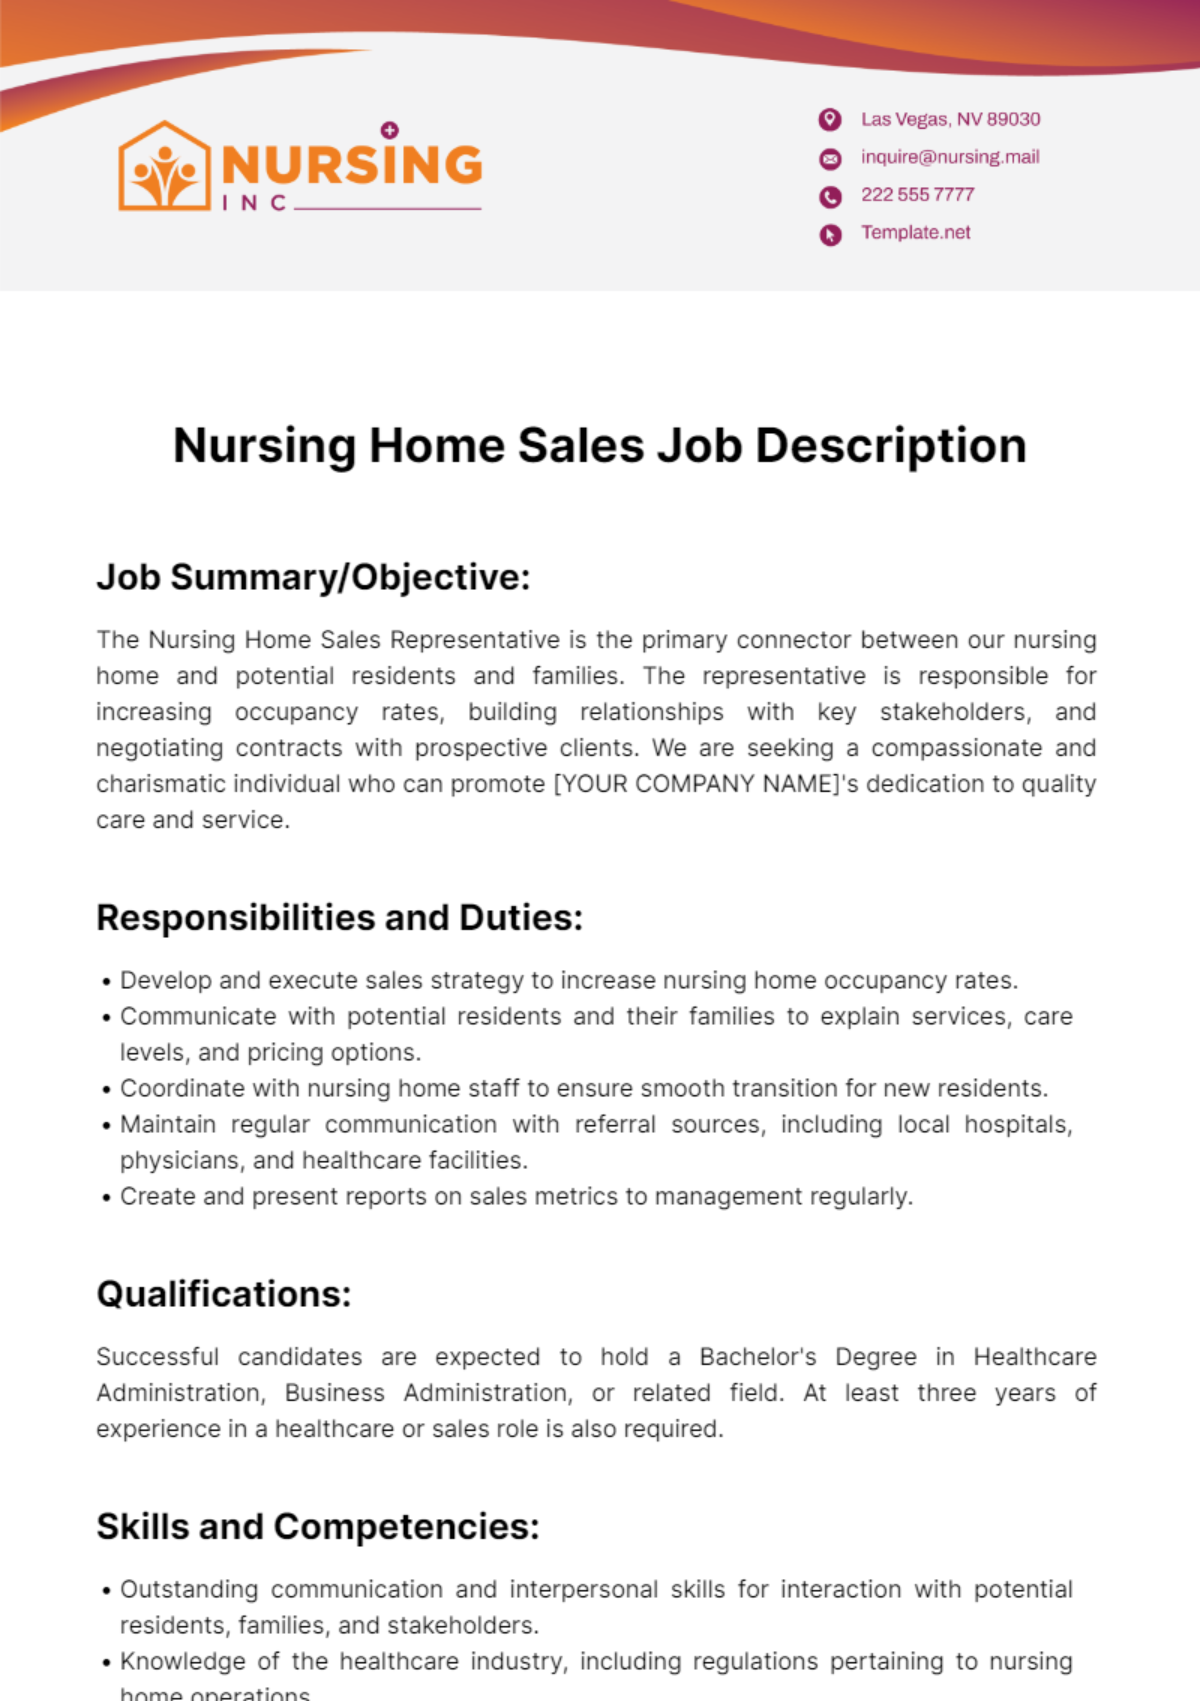 Nursing Home Sales Job Description Template